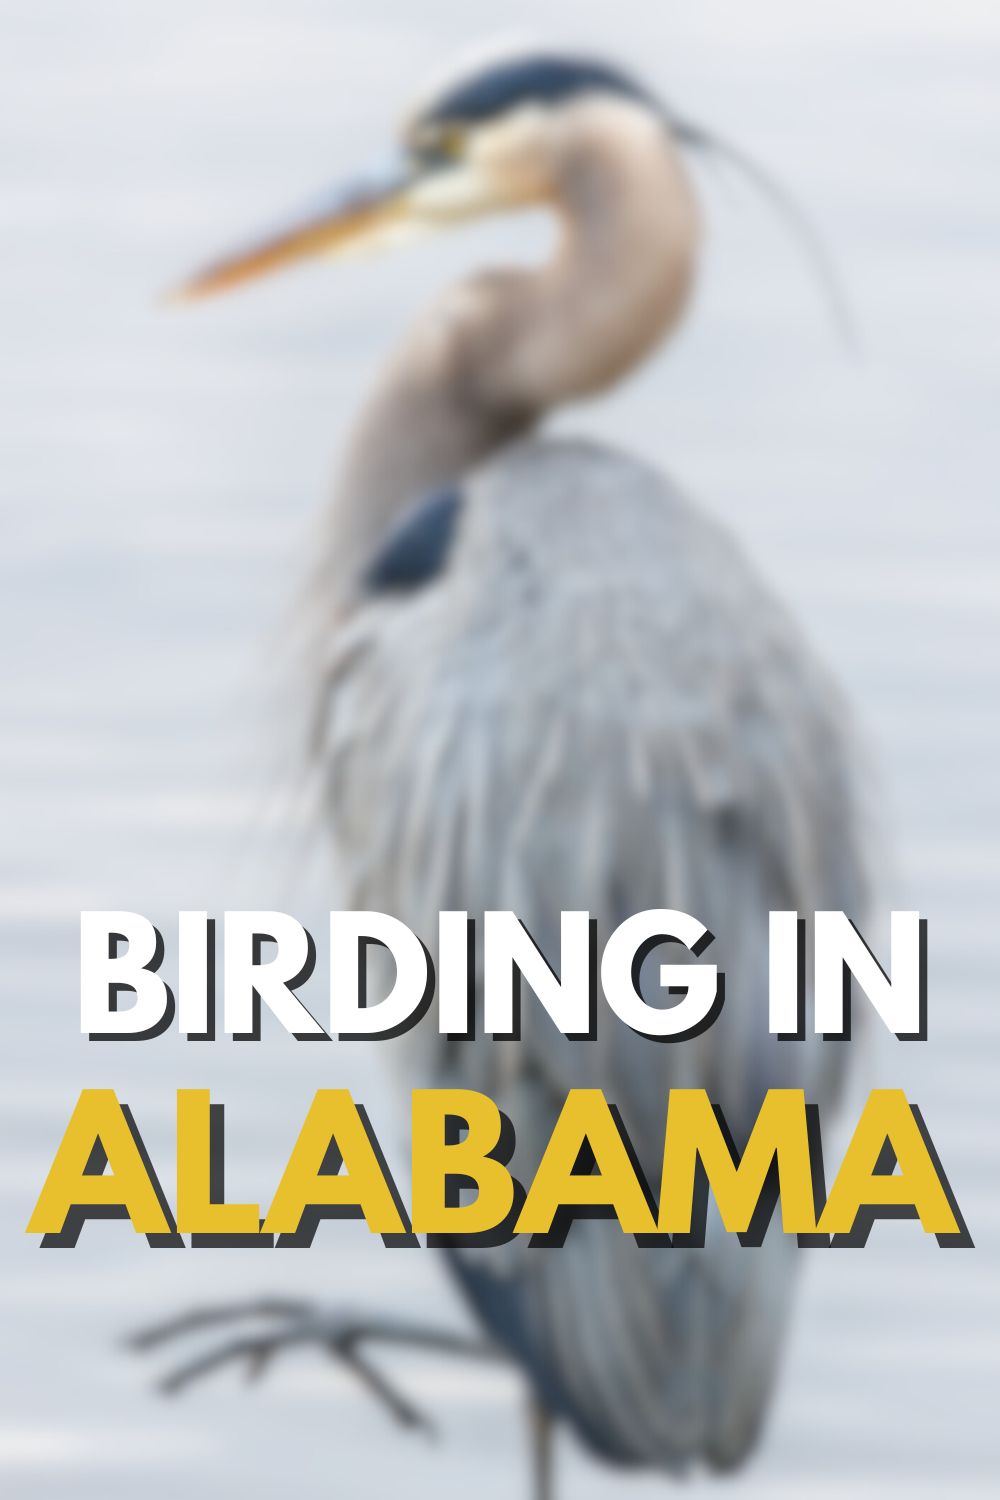 Where to Go Birding in Alabama